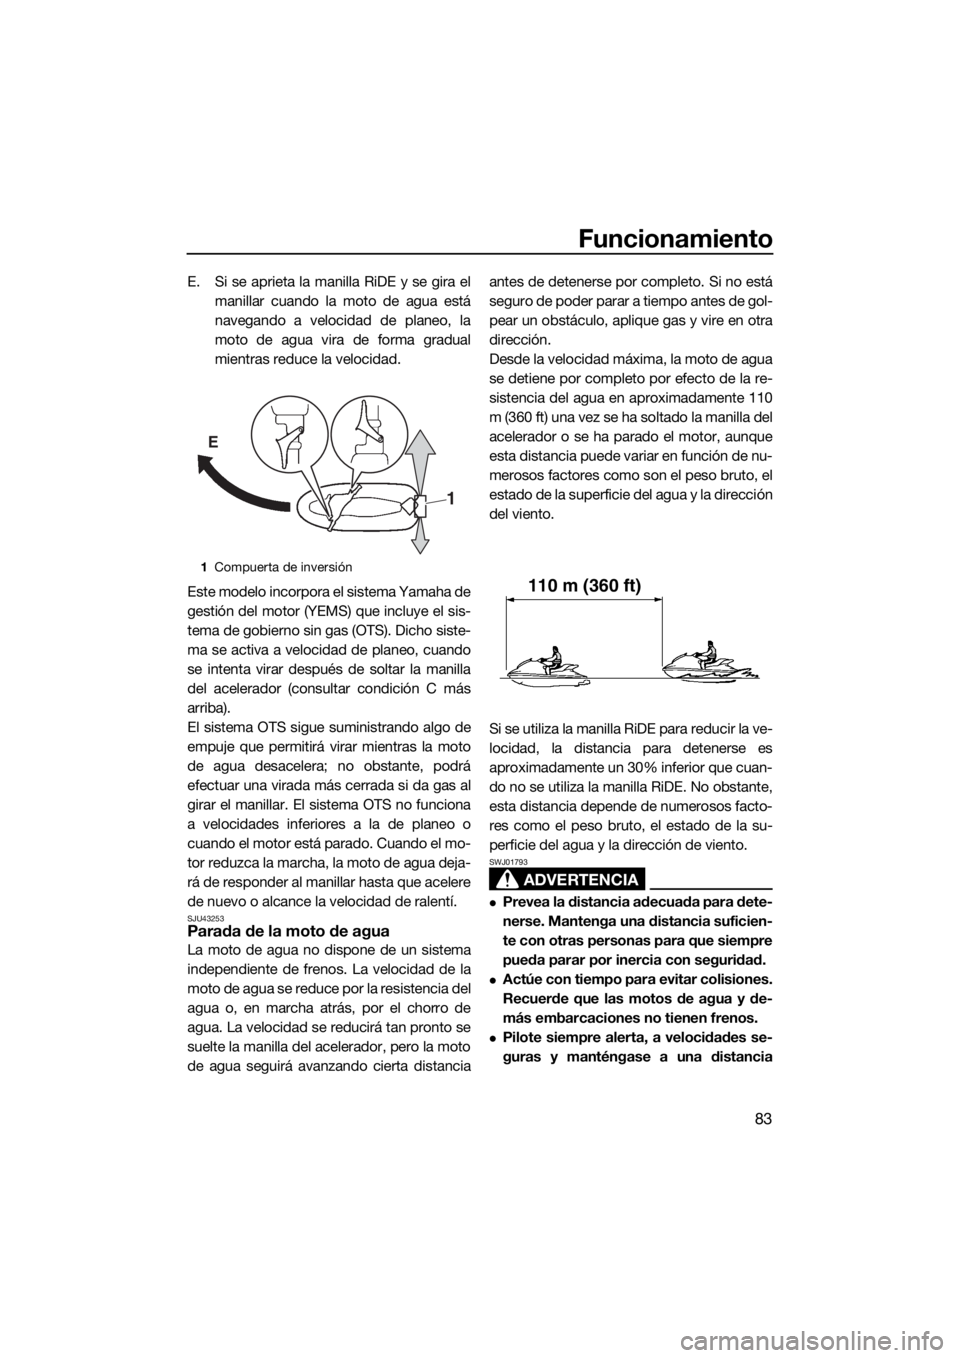 YAMAHA FX HO CRUISER 2020  Manuale de Empleo (in Spanish) Funcionamiento
83
E. Si se aprieta la manilla RiDE y se gira el
manillar cuando la moto de agua está
navegando a velocidad de planeo, la
moto de agua vira de forma gradual
mientras reduce la velocida